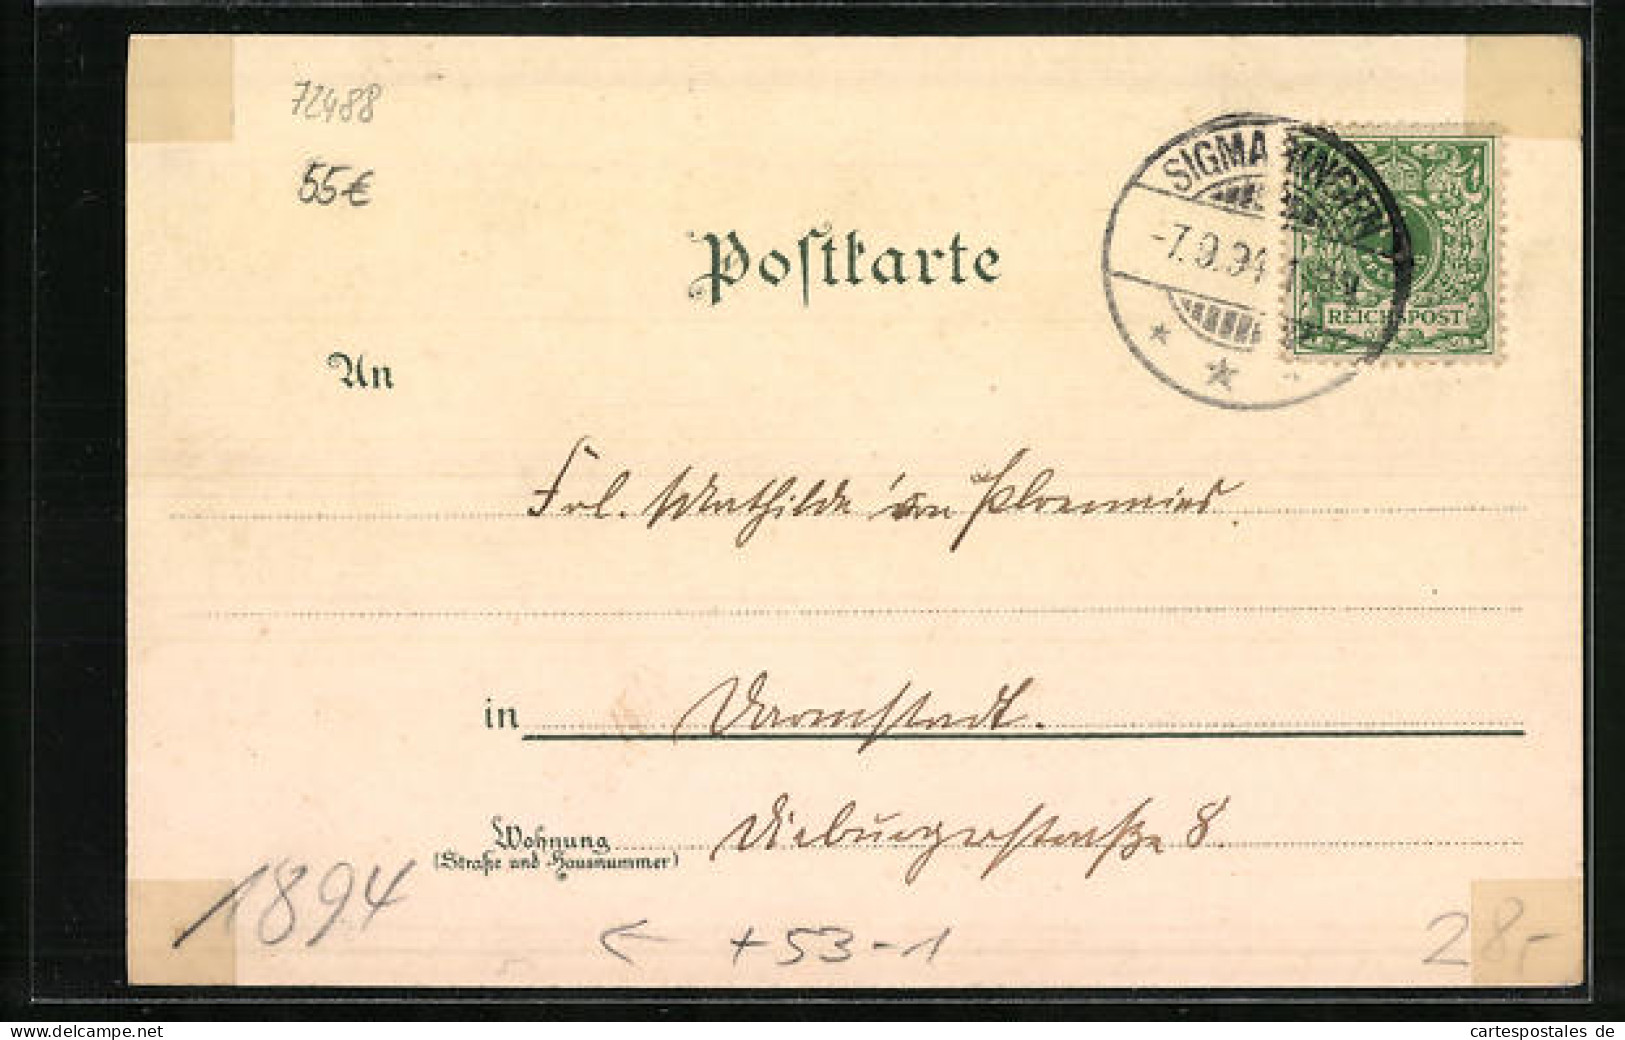 Vorläufer-Lithographie Sigmaringen, 1894, Teilansicht  - Sigmaringen